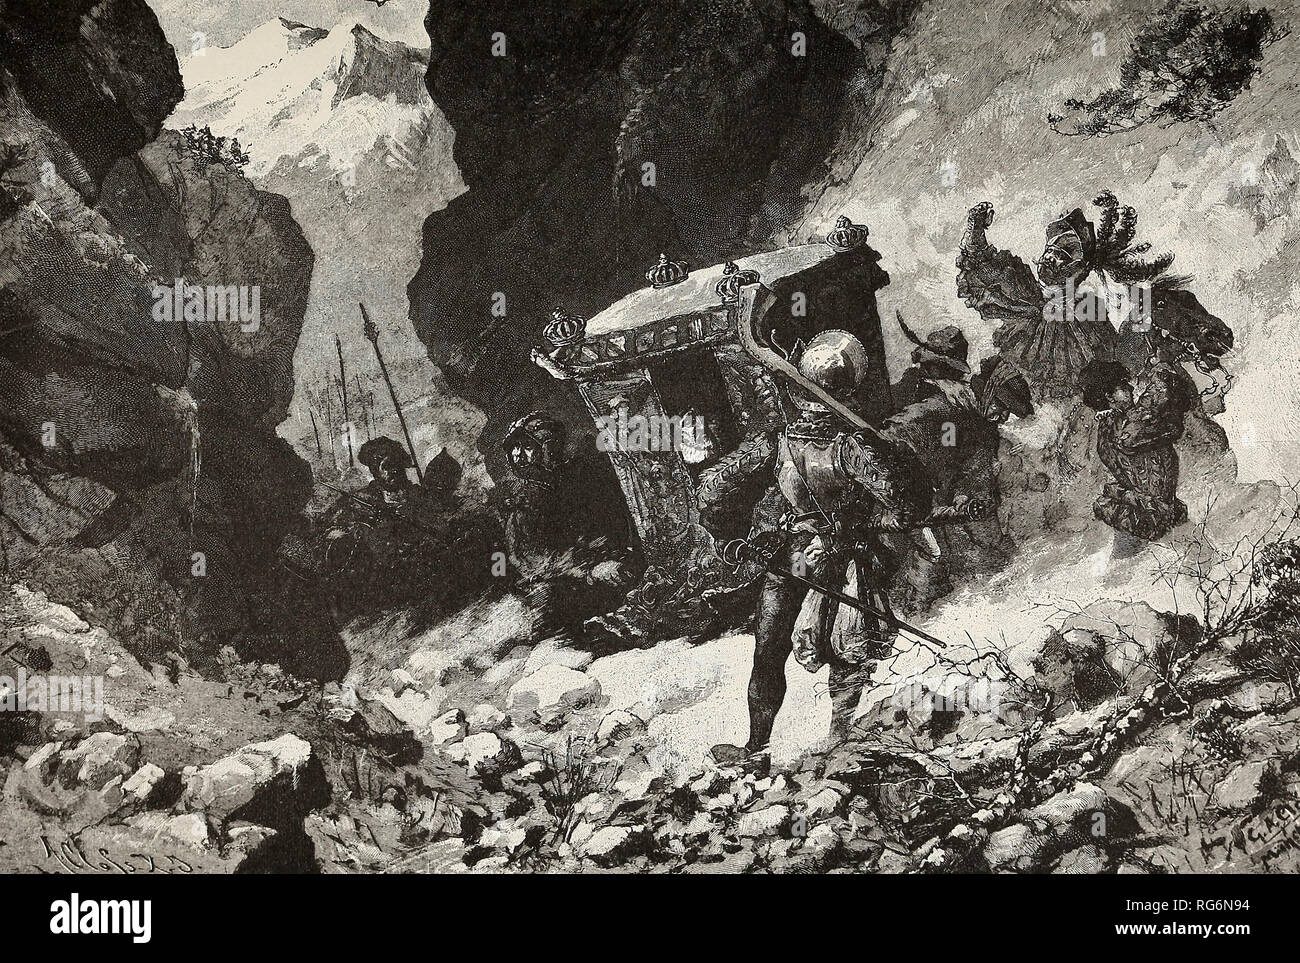 Le vol de l'Empereur Charles - Charles V s'enfuit soudainement sur les Alpes pour échapper aux rebelles allemand Banque D'Images